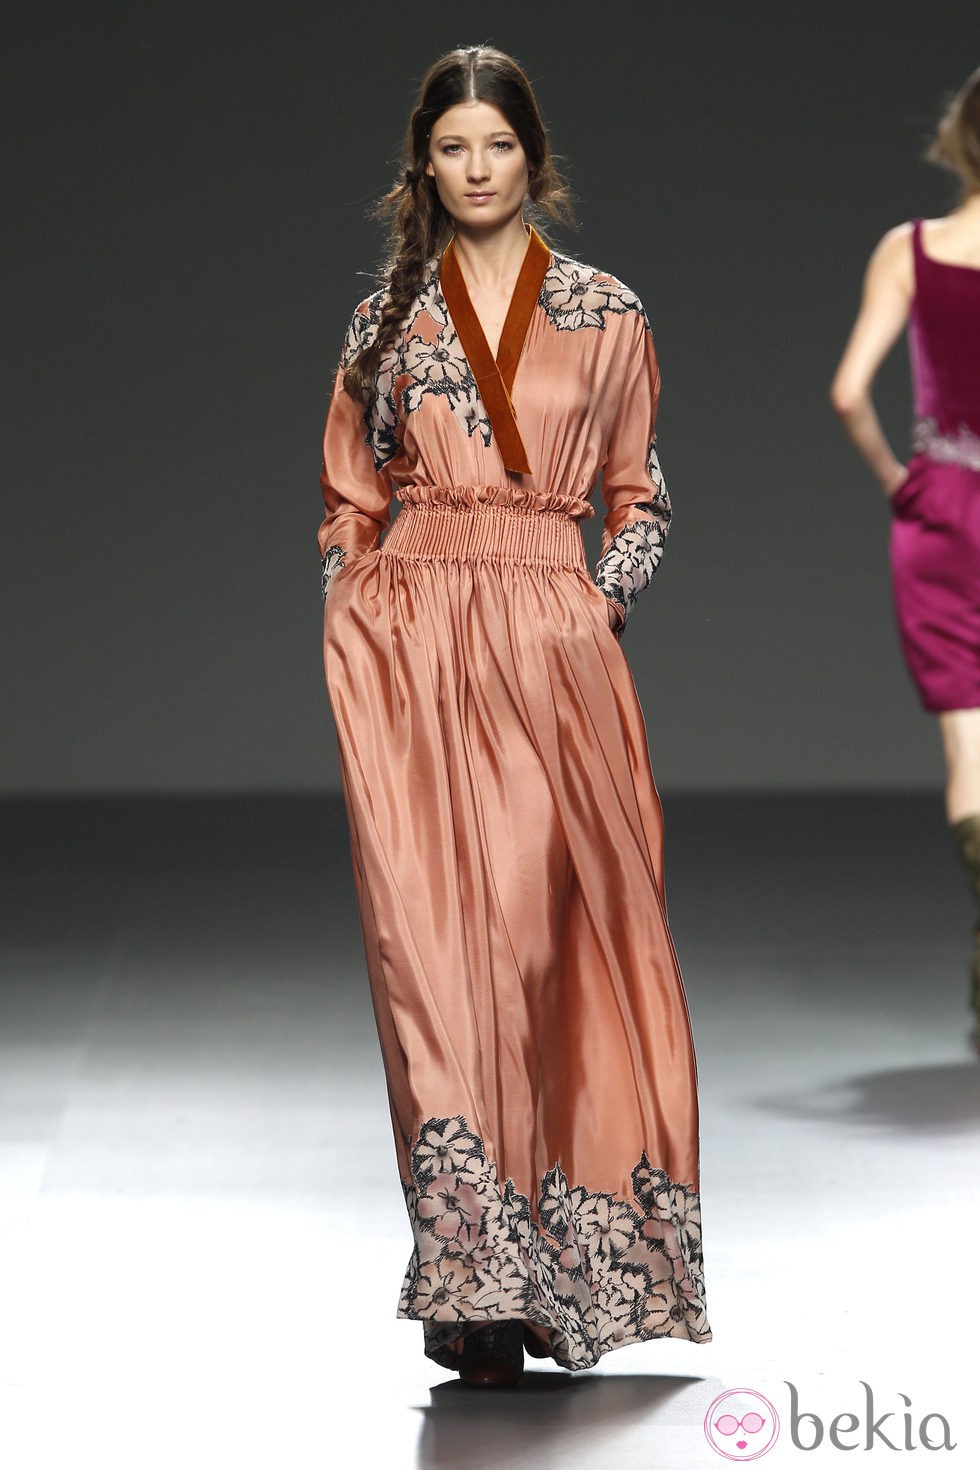 Vestido naranja de la colección otoño/invierno 2012/2013 de Victorio & Lucchino